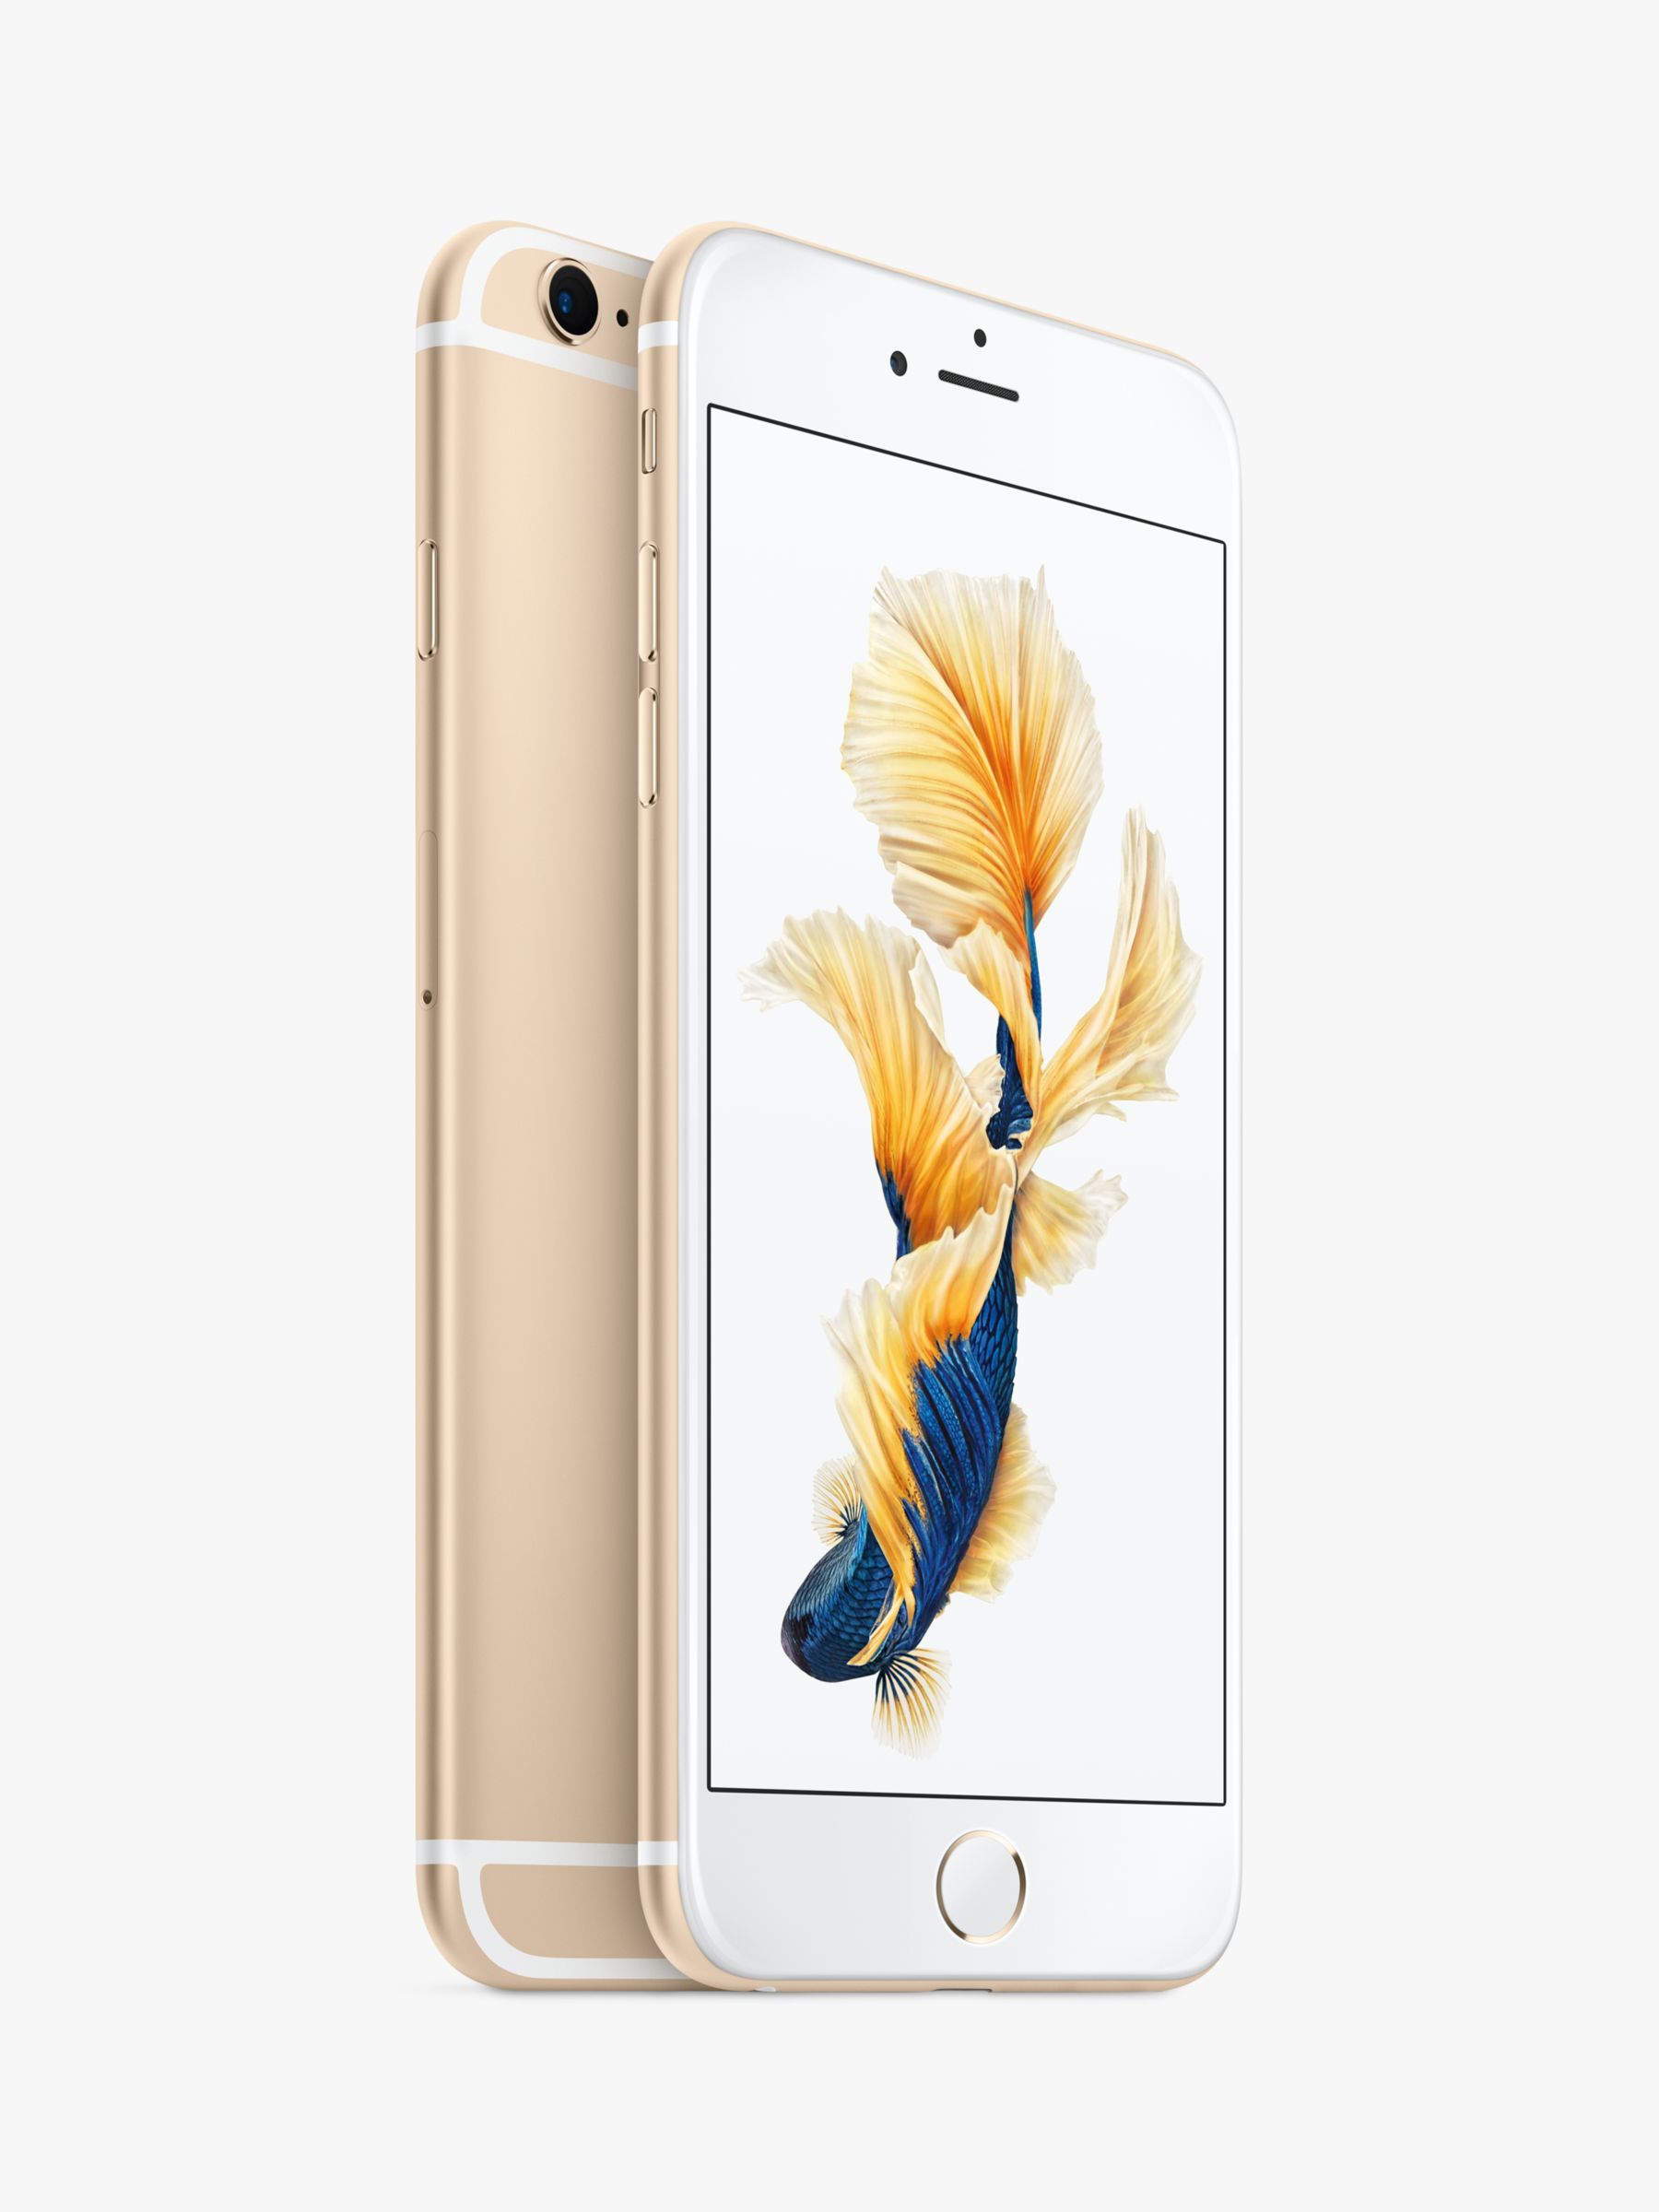 Apple iPhone 6s Plus, iOS, 5.5, 4G LTE, SIM Free, 128GB